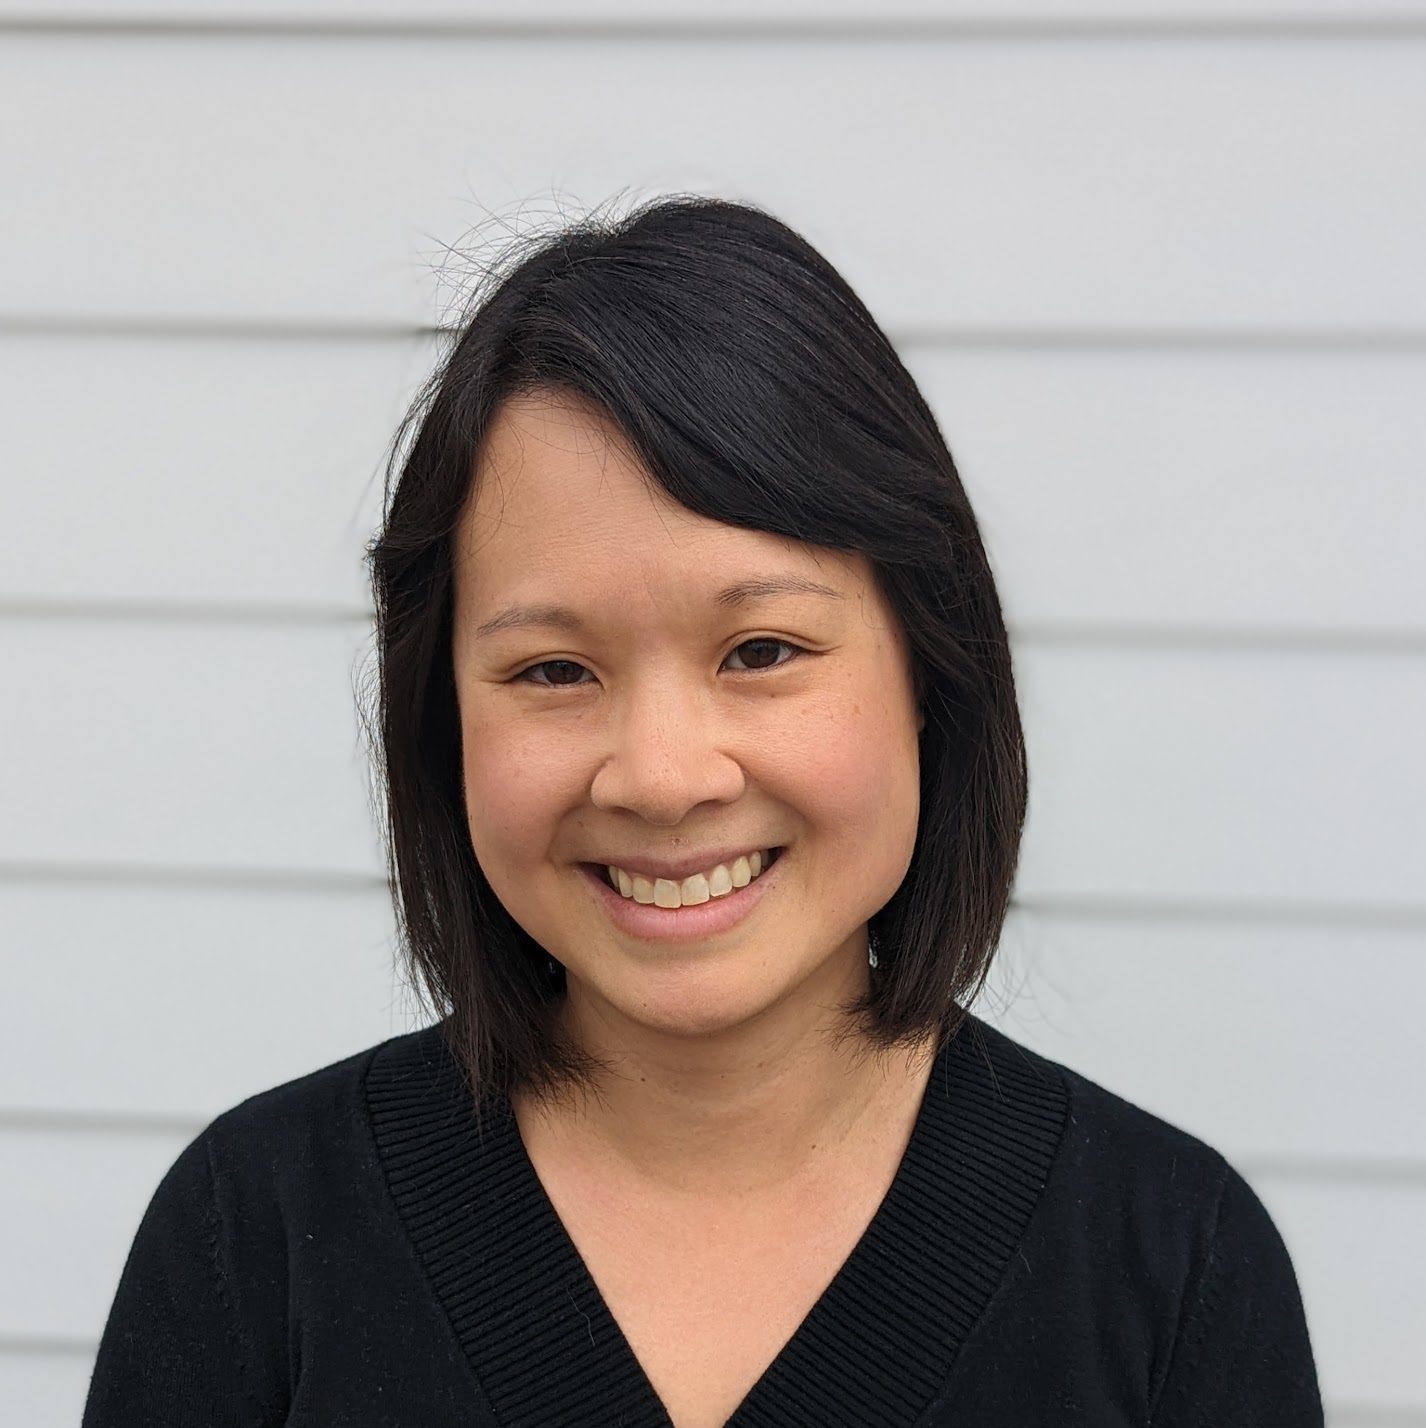 Smiling headshot of Naishin - young, Asian woman with short hair